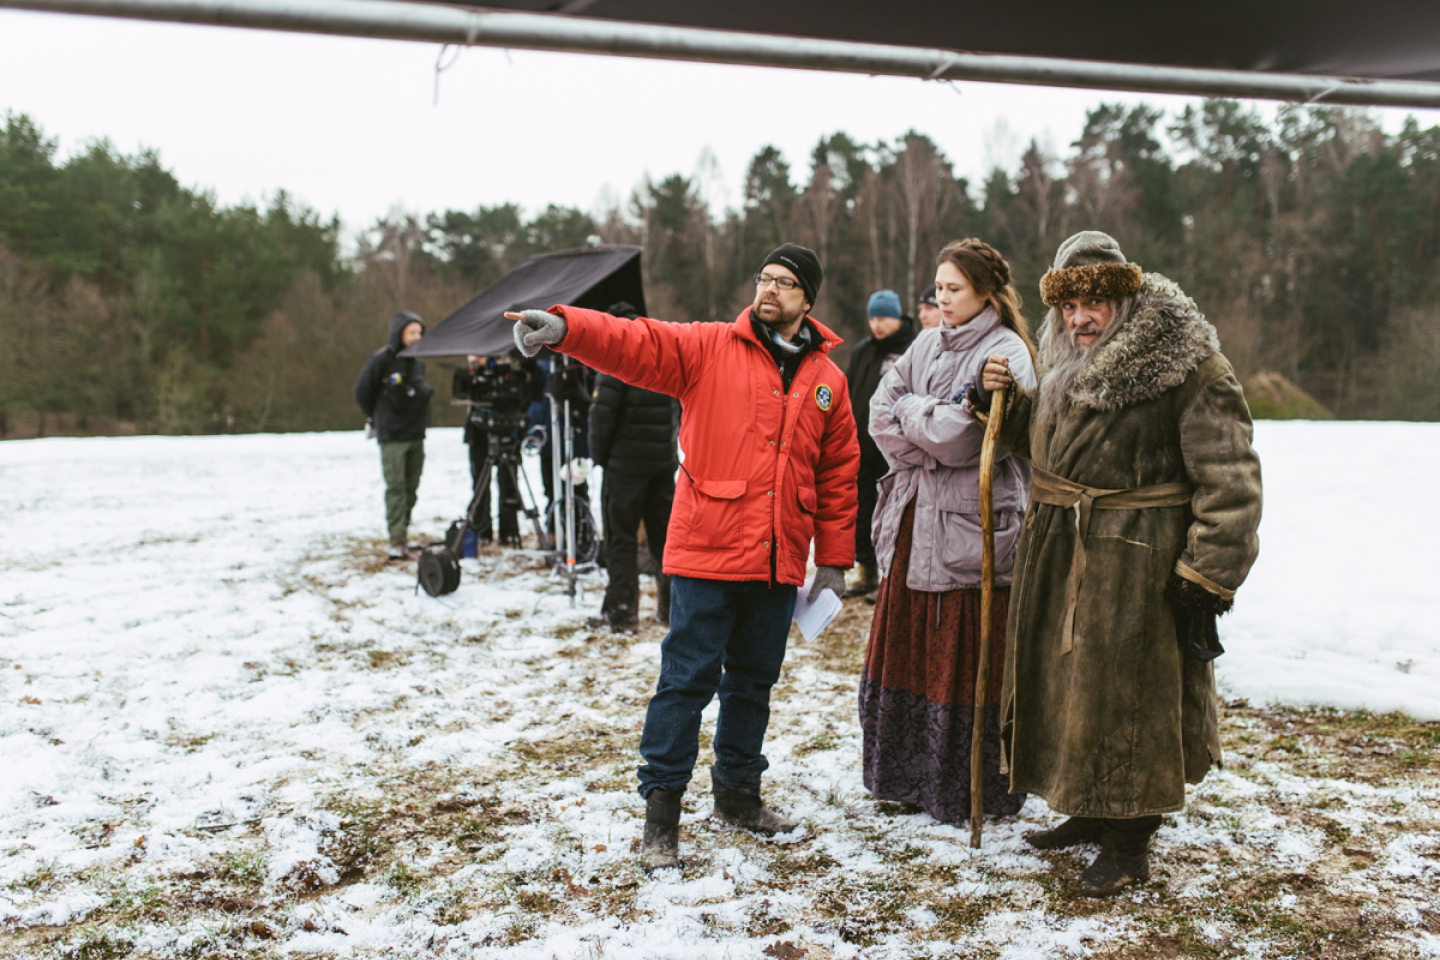 Tournage en extérieur en hiver, avec matériel de tournage et, au premier plan, un membre de l'équipe montrant quelque chose du doigt à deux acteurs portant de gros manteaux 